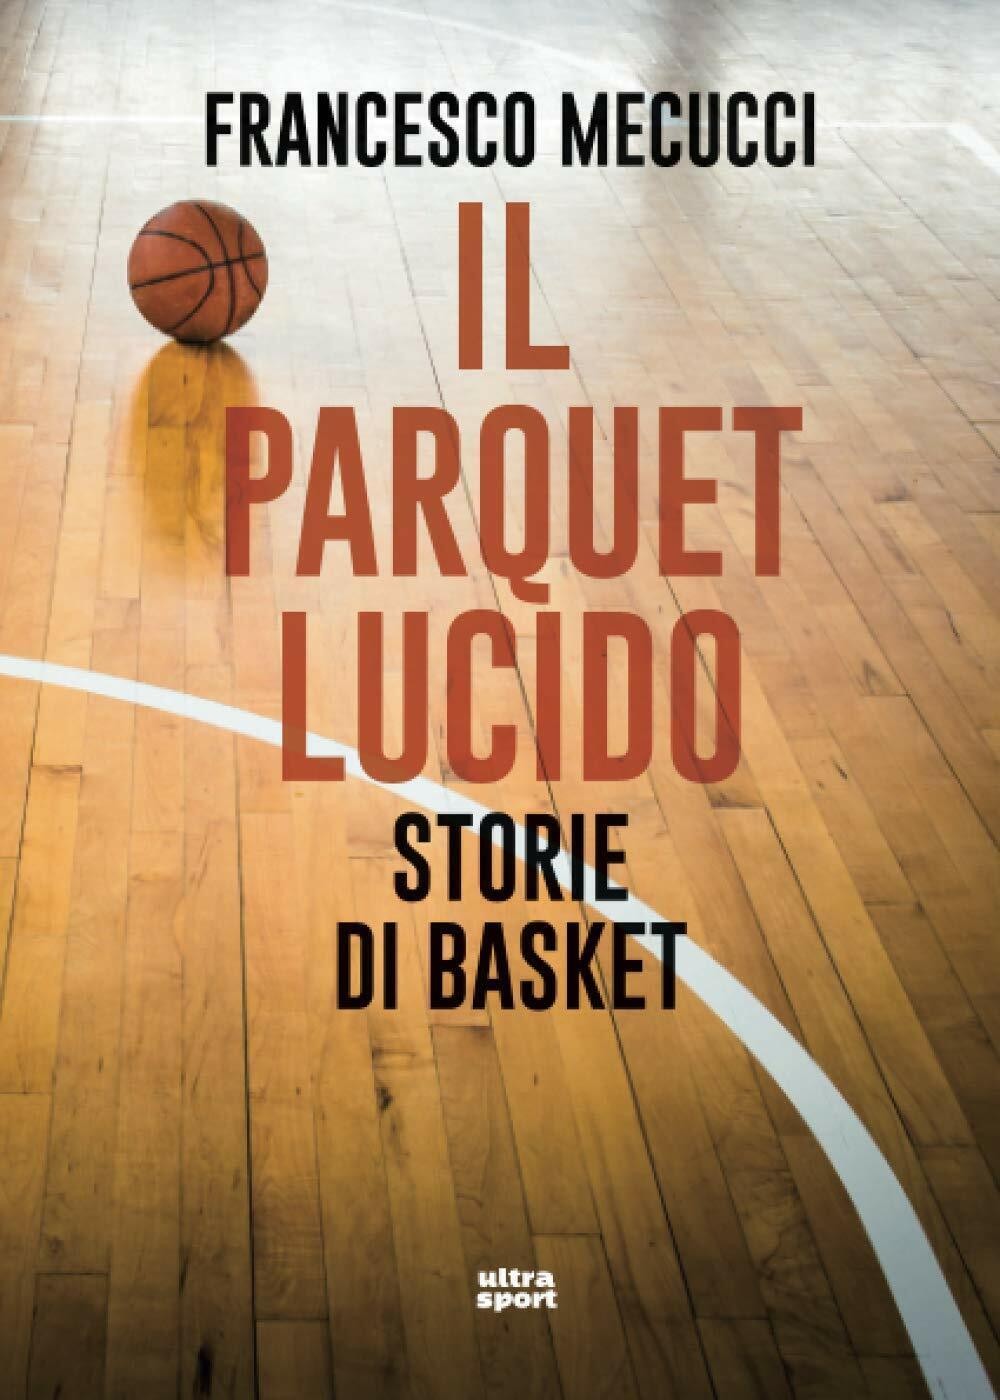 Il parquet lucido: Storie di basket - Francesco Mecucci - Ultra, 2020 libro usato